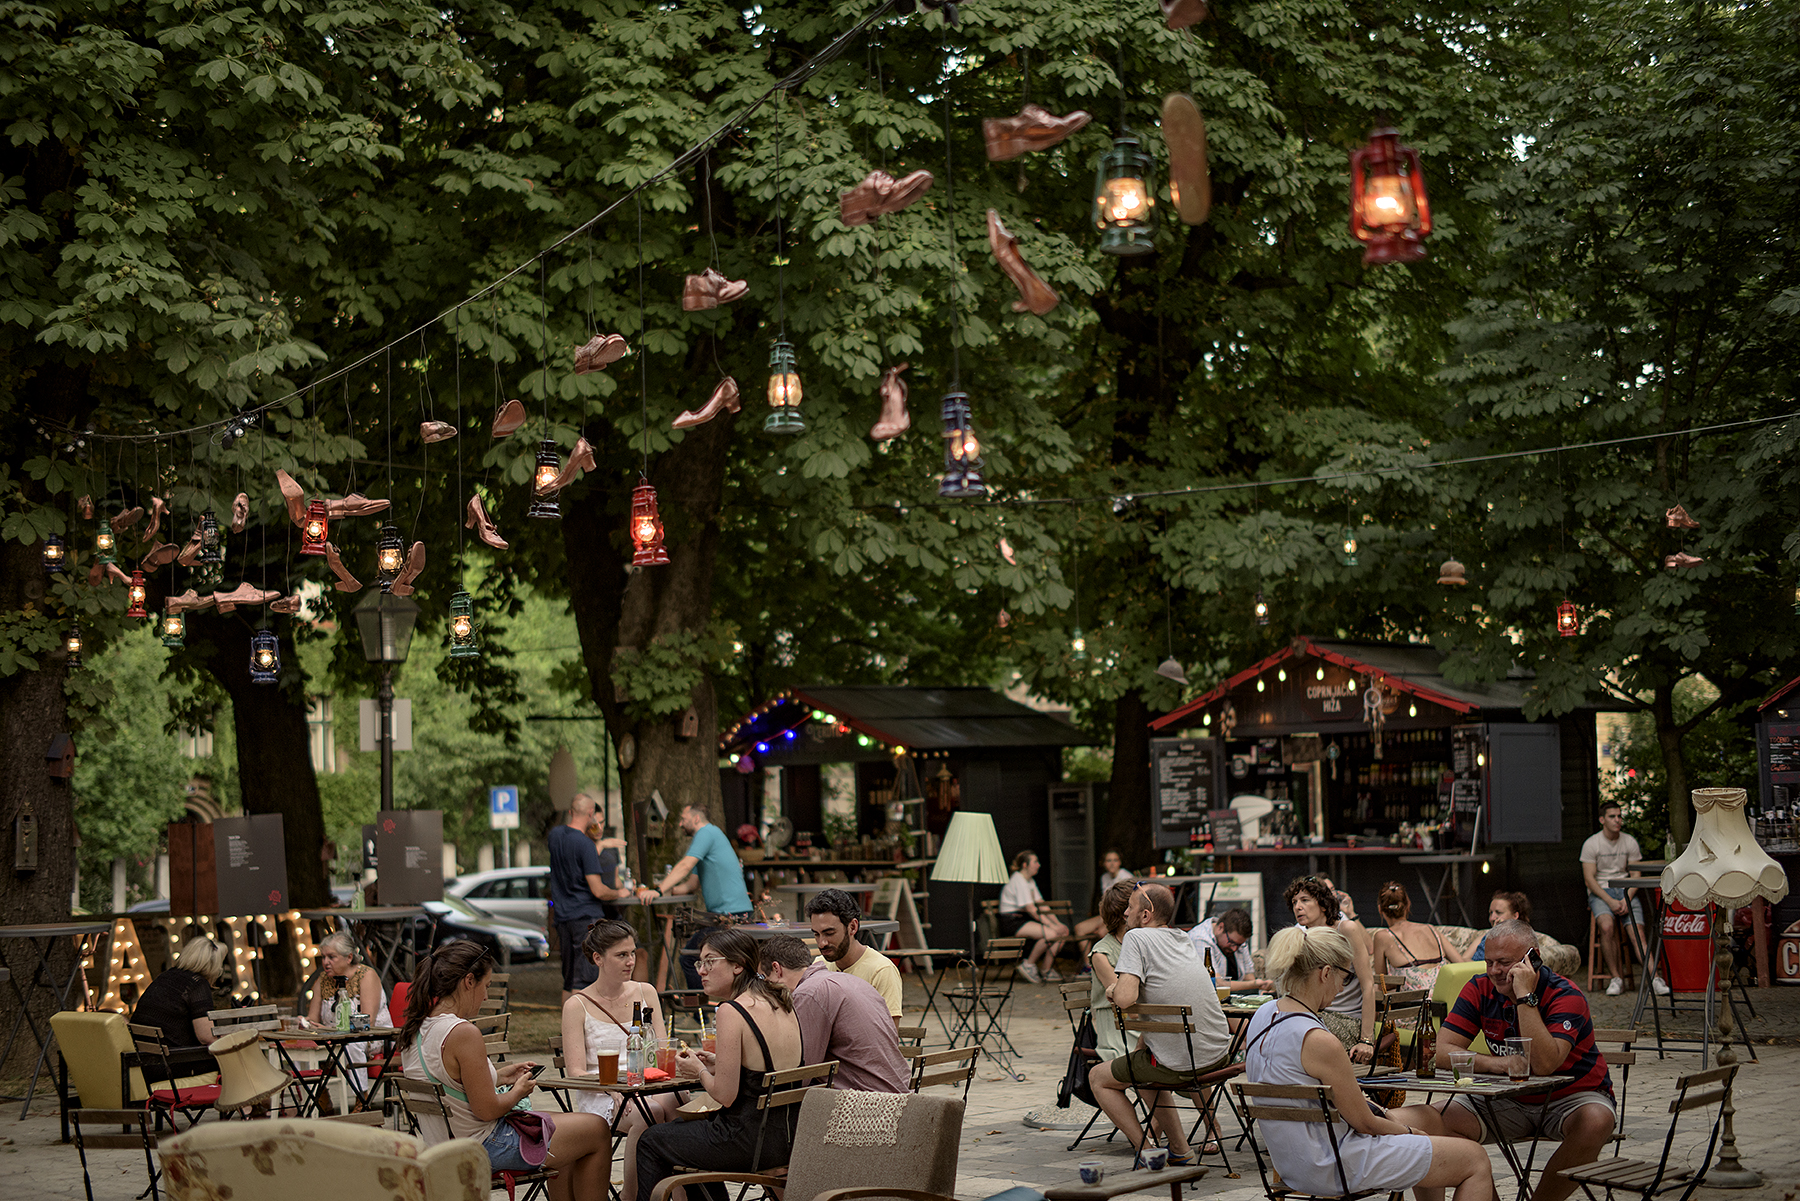 Caffe de Matoš ovo se ljeto održava na Mažurancu. Foto: Vjekoslav Skledar